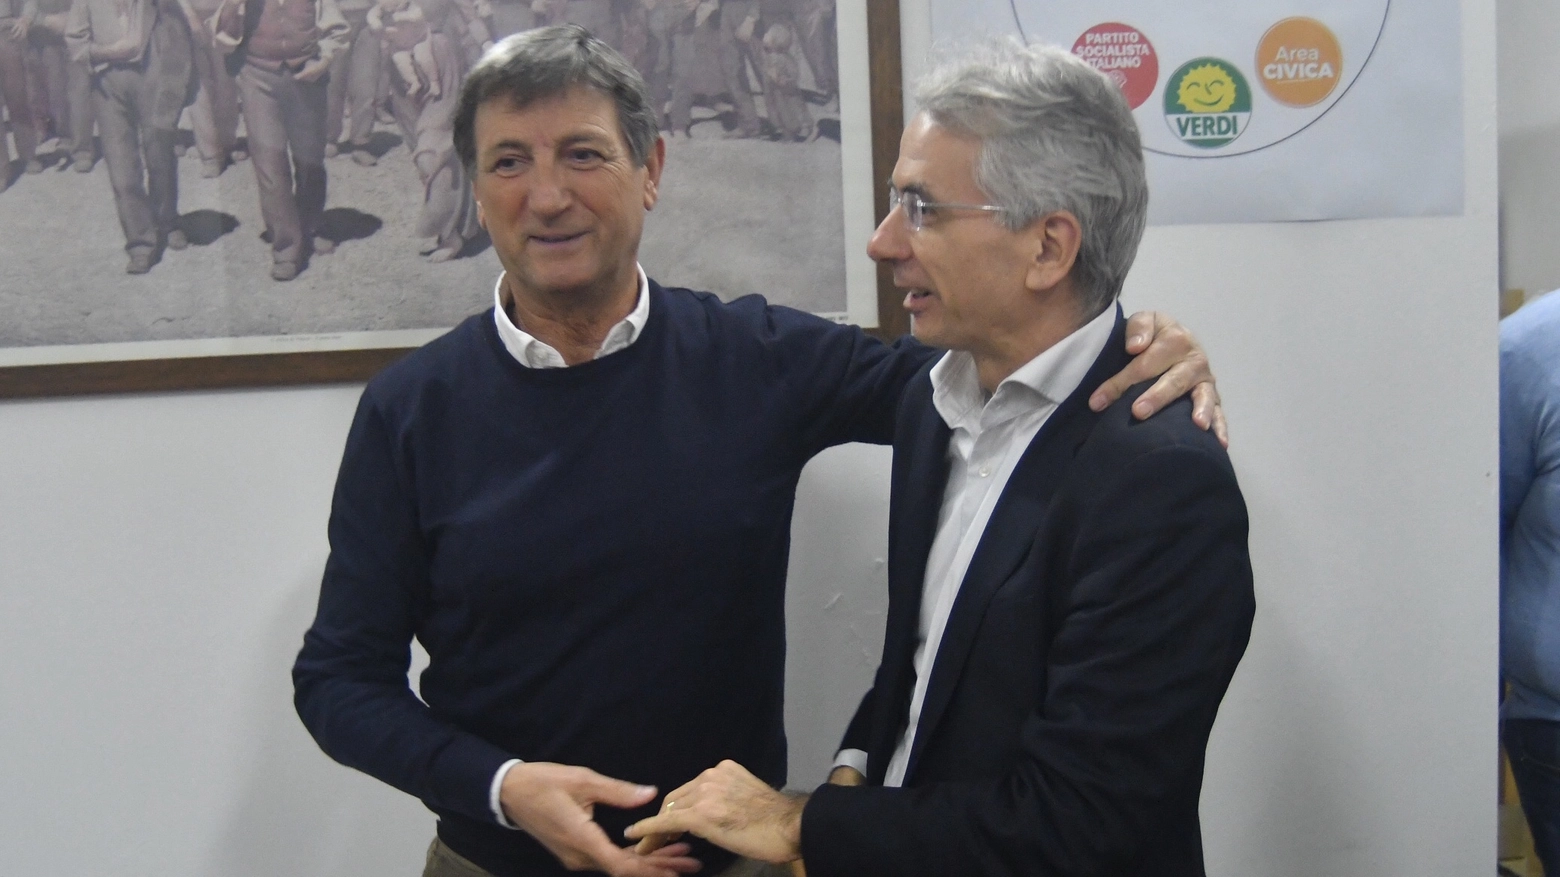 Da sinistra Angelo Zubbani e Cosimo Ferri